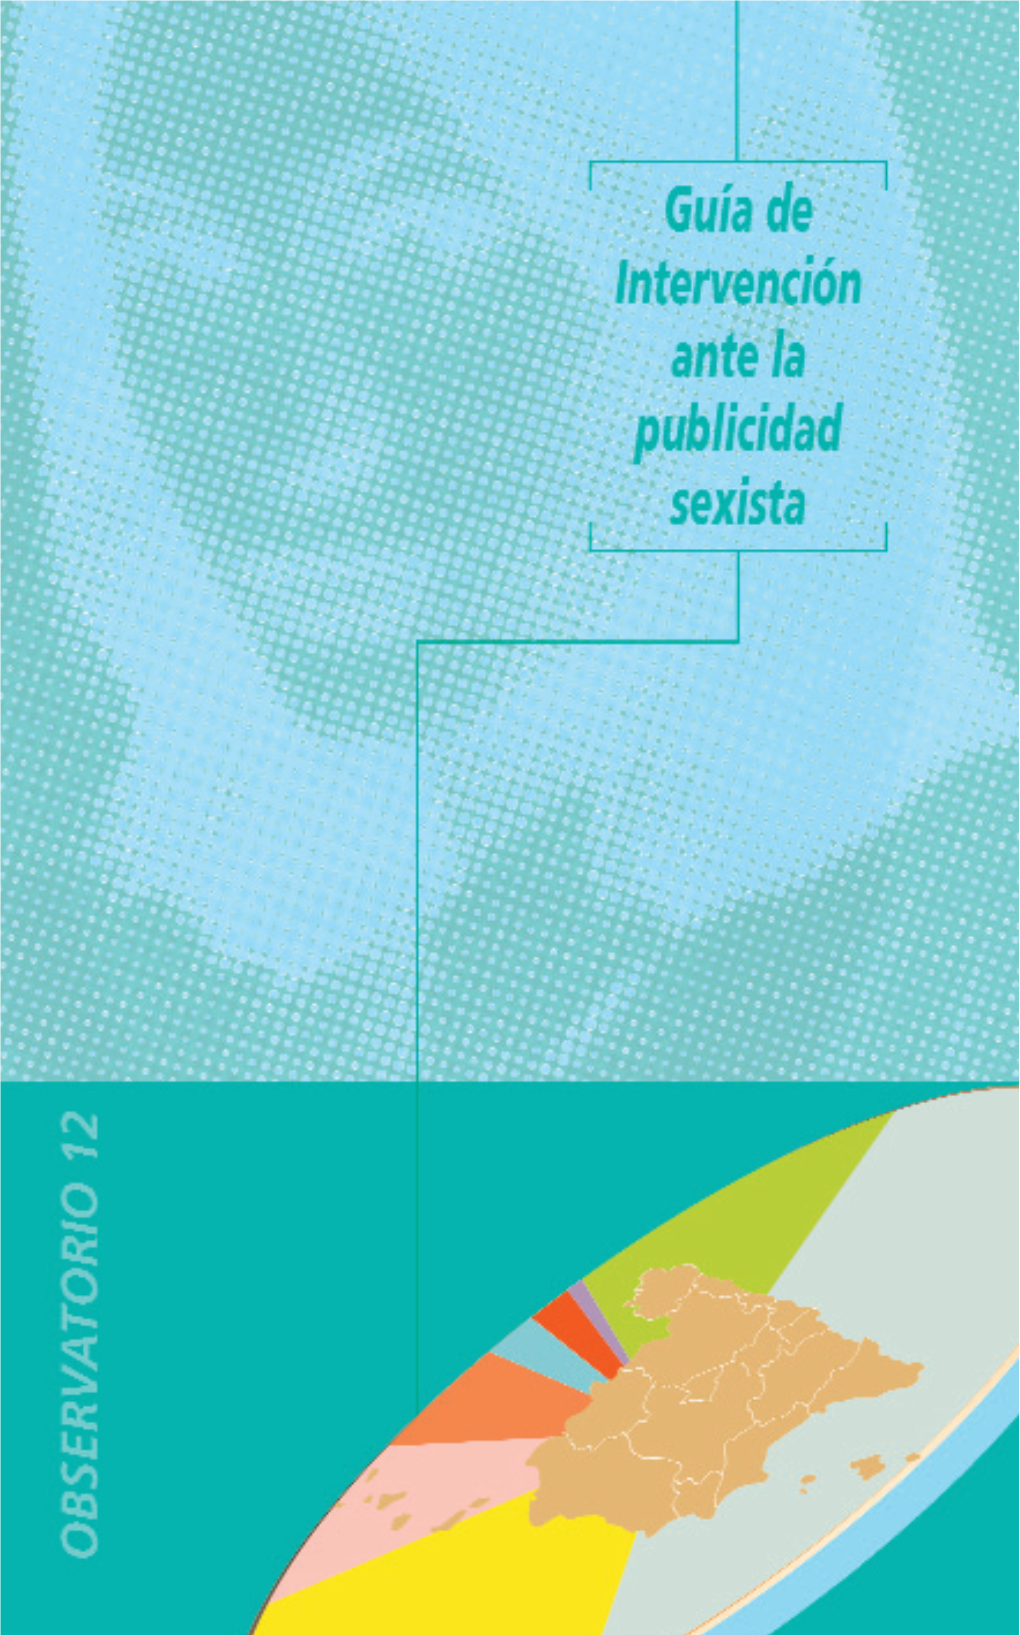 Guía De Intervención Ante La Publicidad Sexista  Instituto De La Mujer Guía De Intervención Ante La Publicidad Sexista